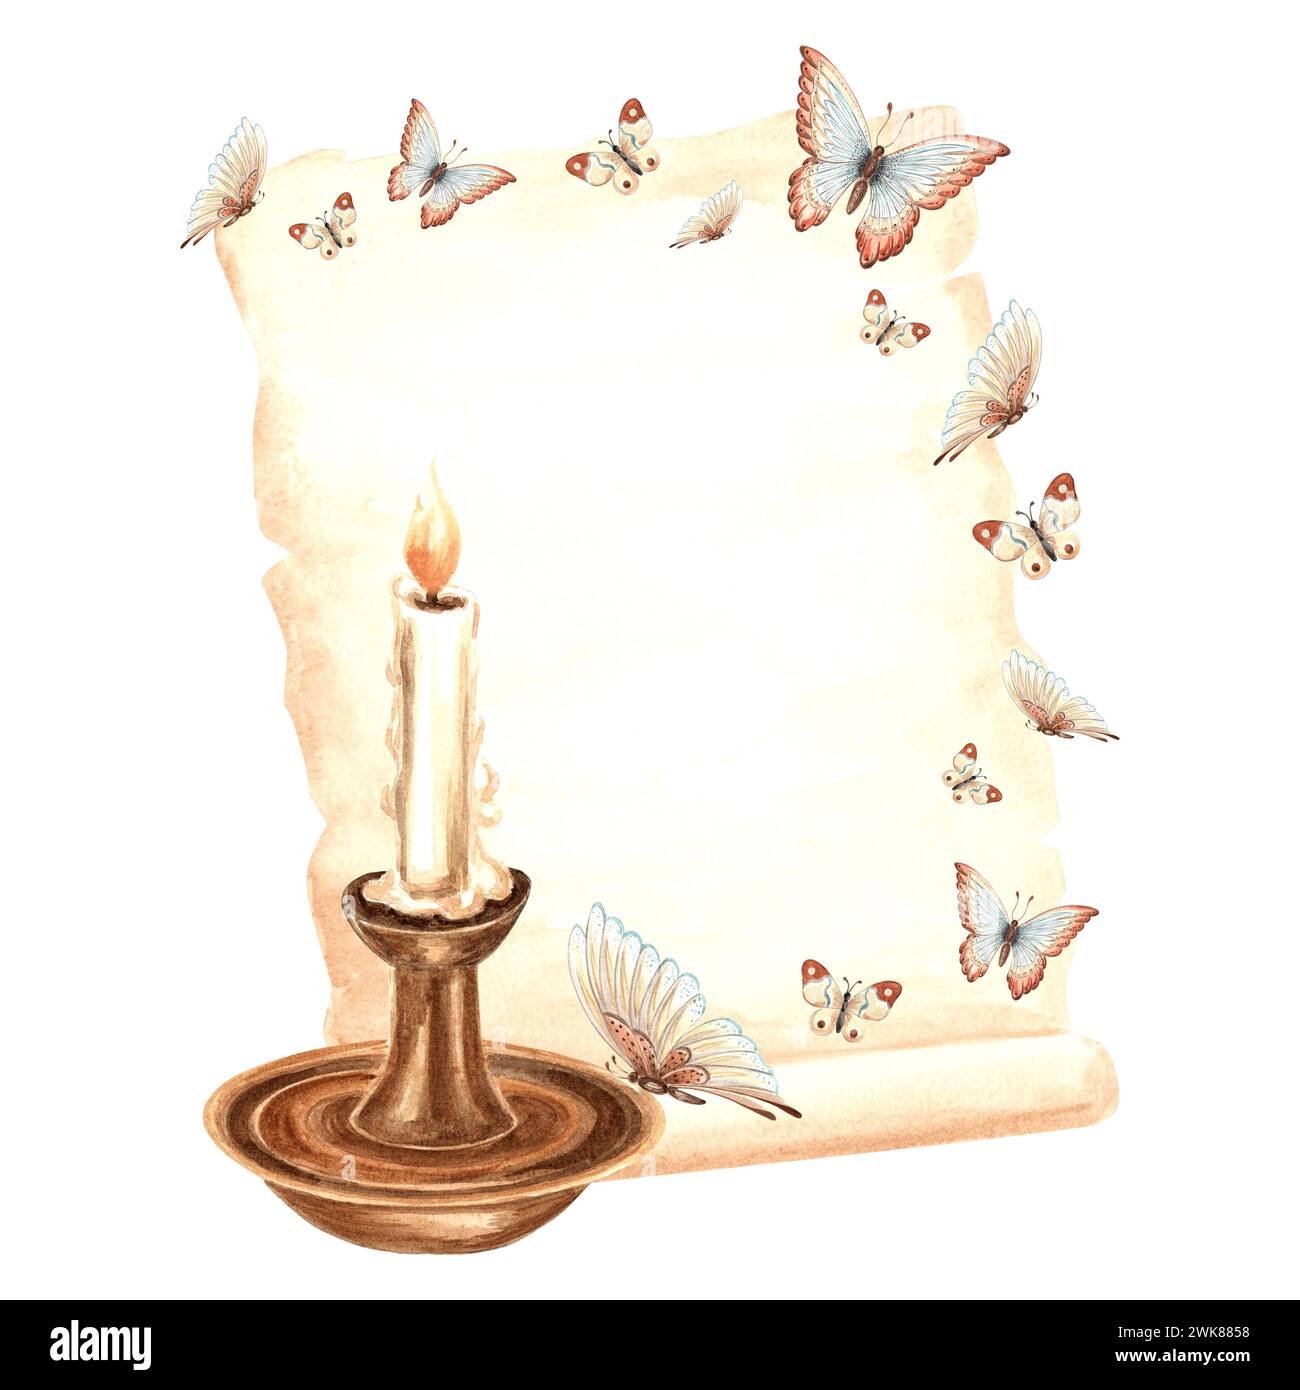 Handgeschriebenes Pergamentpapier mit flatternden Schmetterlingen, brennender Kerze im Kerzenhalter. Handgezeichnete Aquarellillustration. Isolierter Retro-Ko Stockfoto